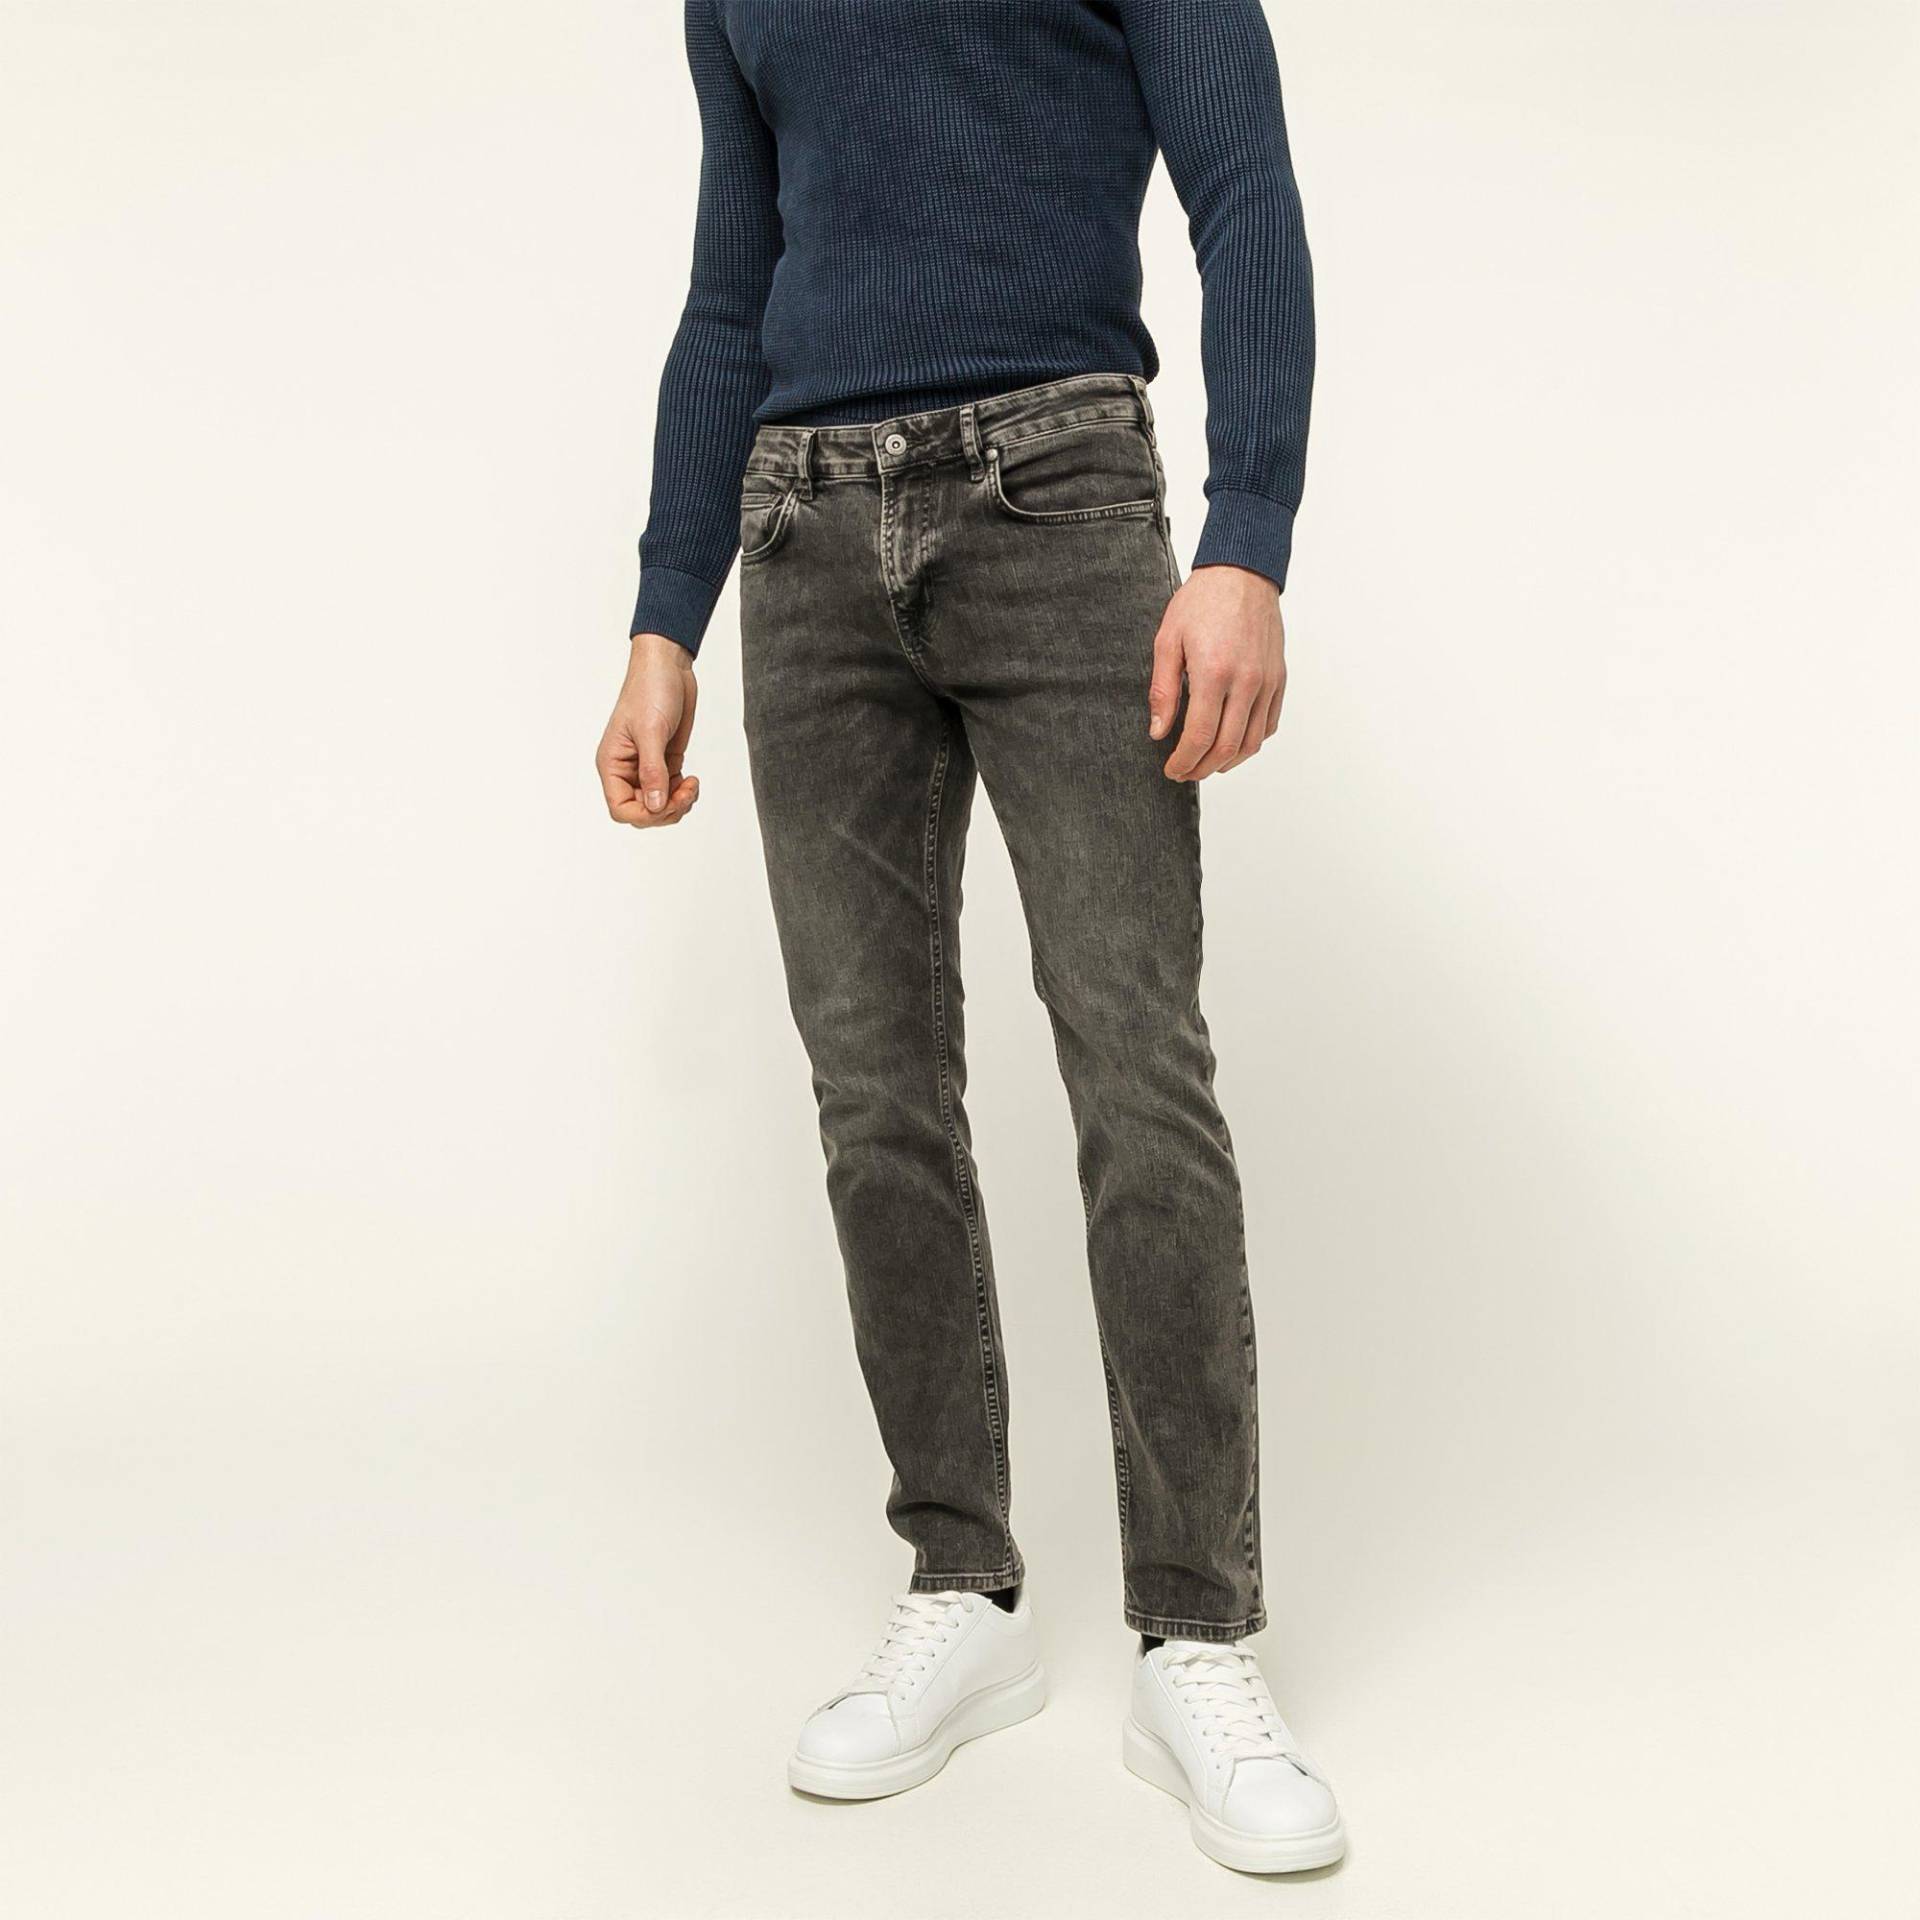 Jeans, Slim Fit Herren Grau L34/W34 von Manor Man